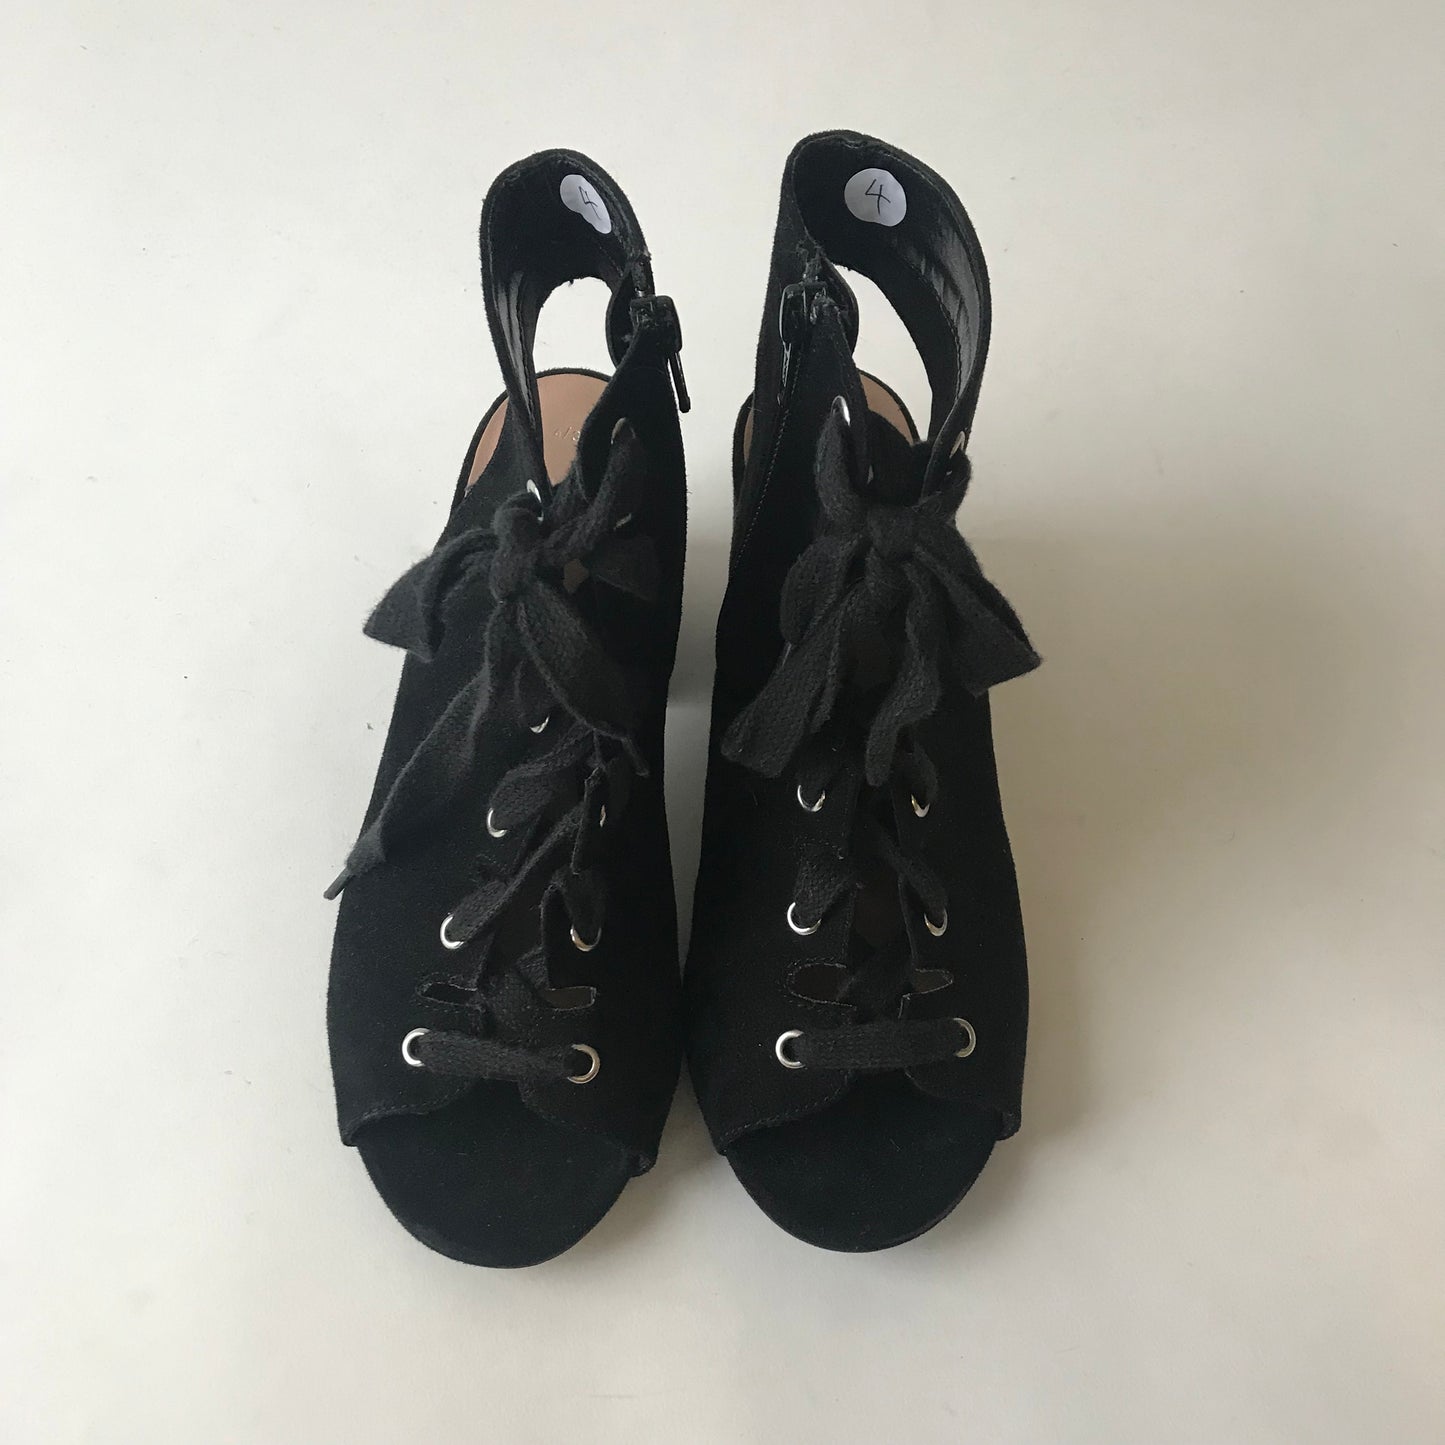 New Look Black Heels Shoe Size 4